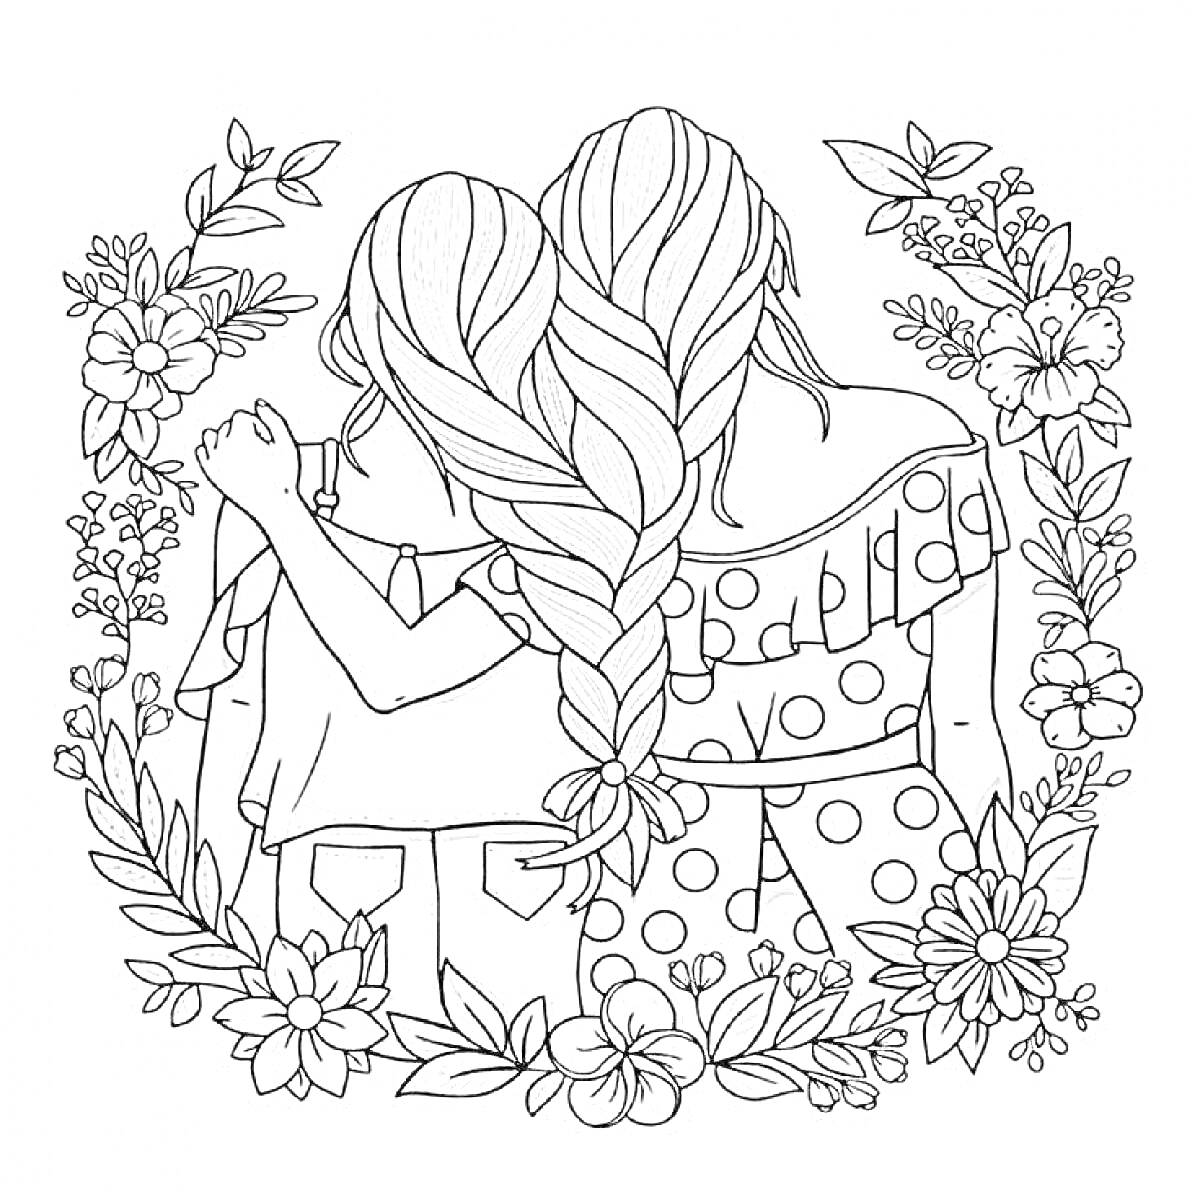 Две девочки с косами, в одежде с воланами, окруженные цветами